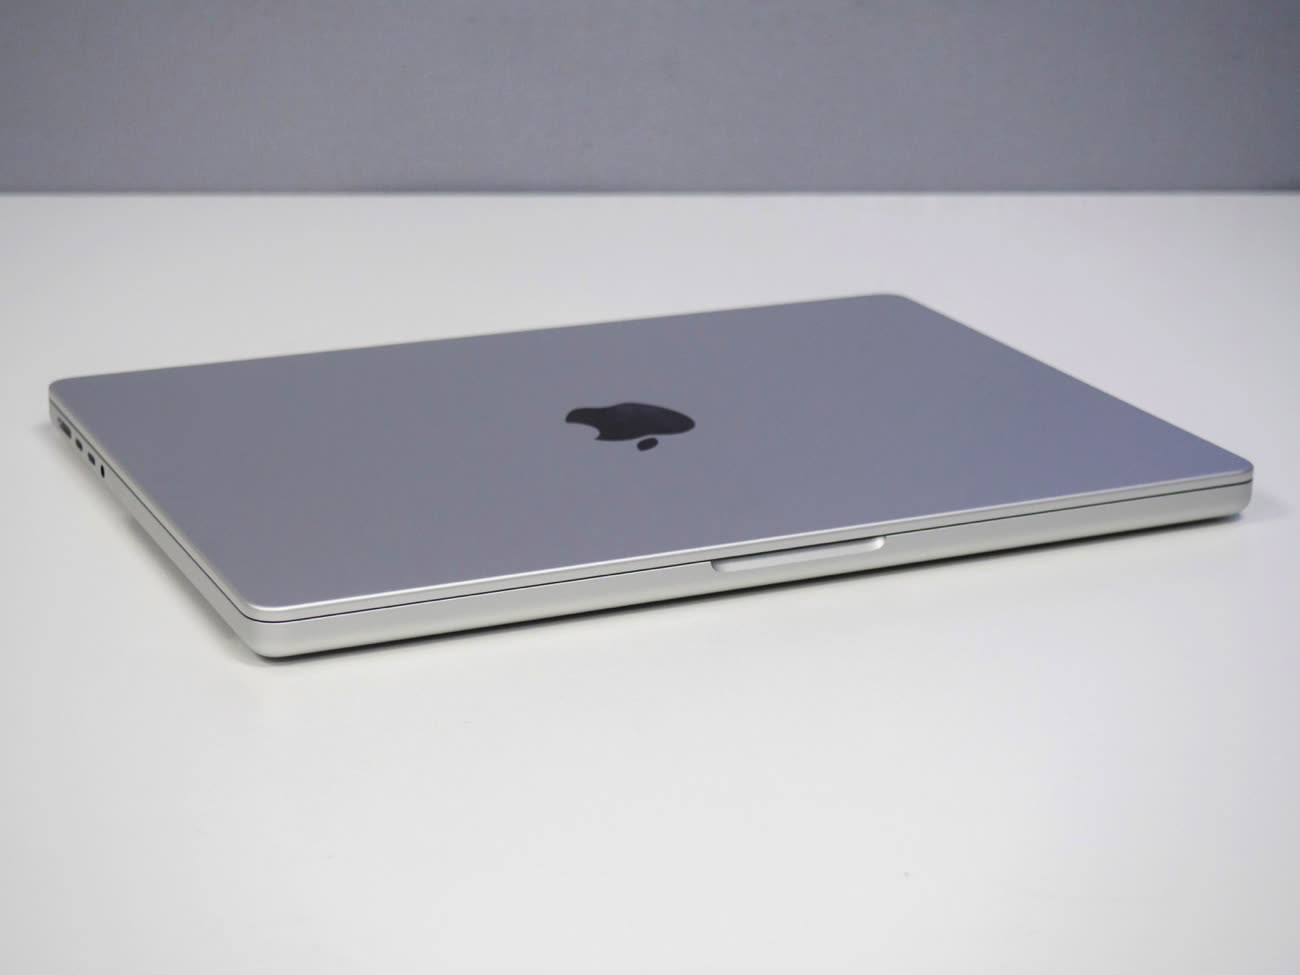 Test MacBook Pro 14 pouces (M1 Max), l'ordinateur portable ultra-puissant